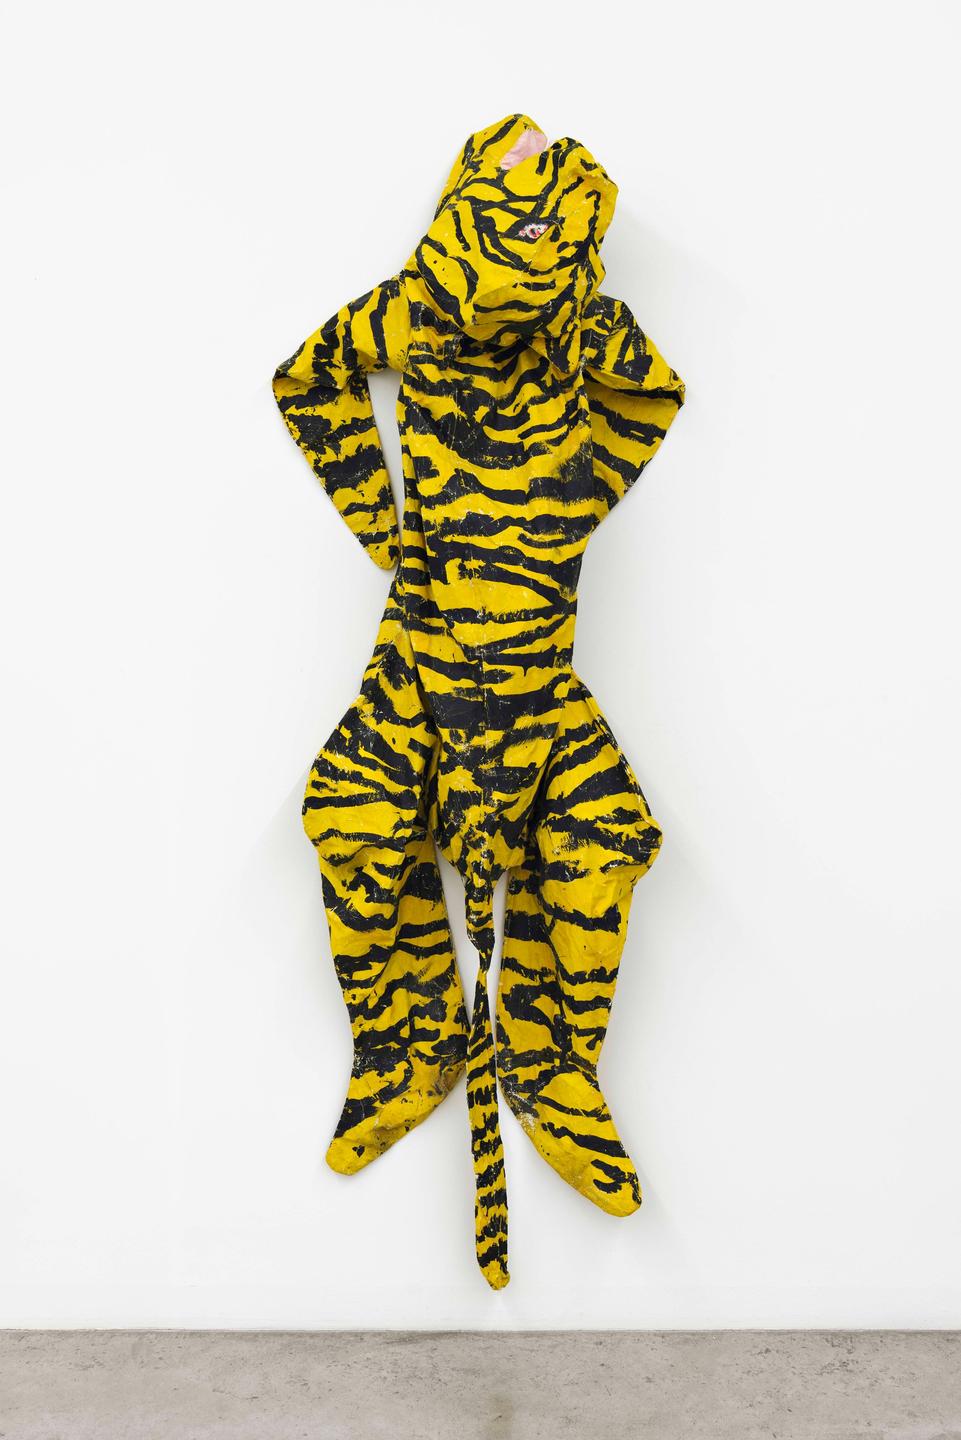 Ein Ganzkörper-Latexanzug mit einem Tigermuster hängt in einem Museum.